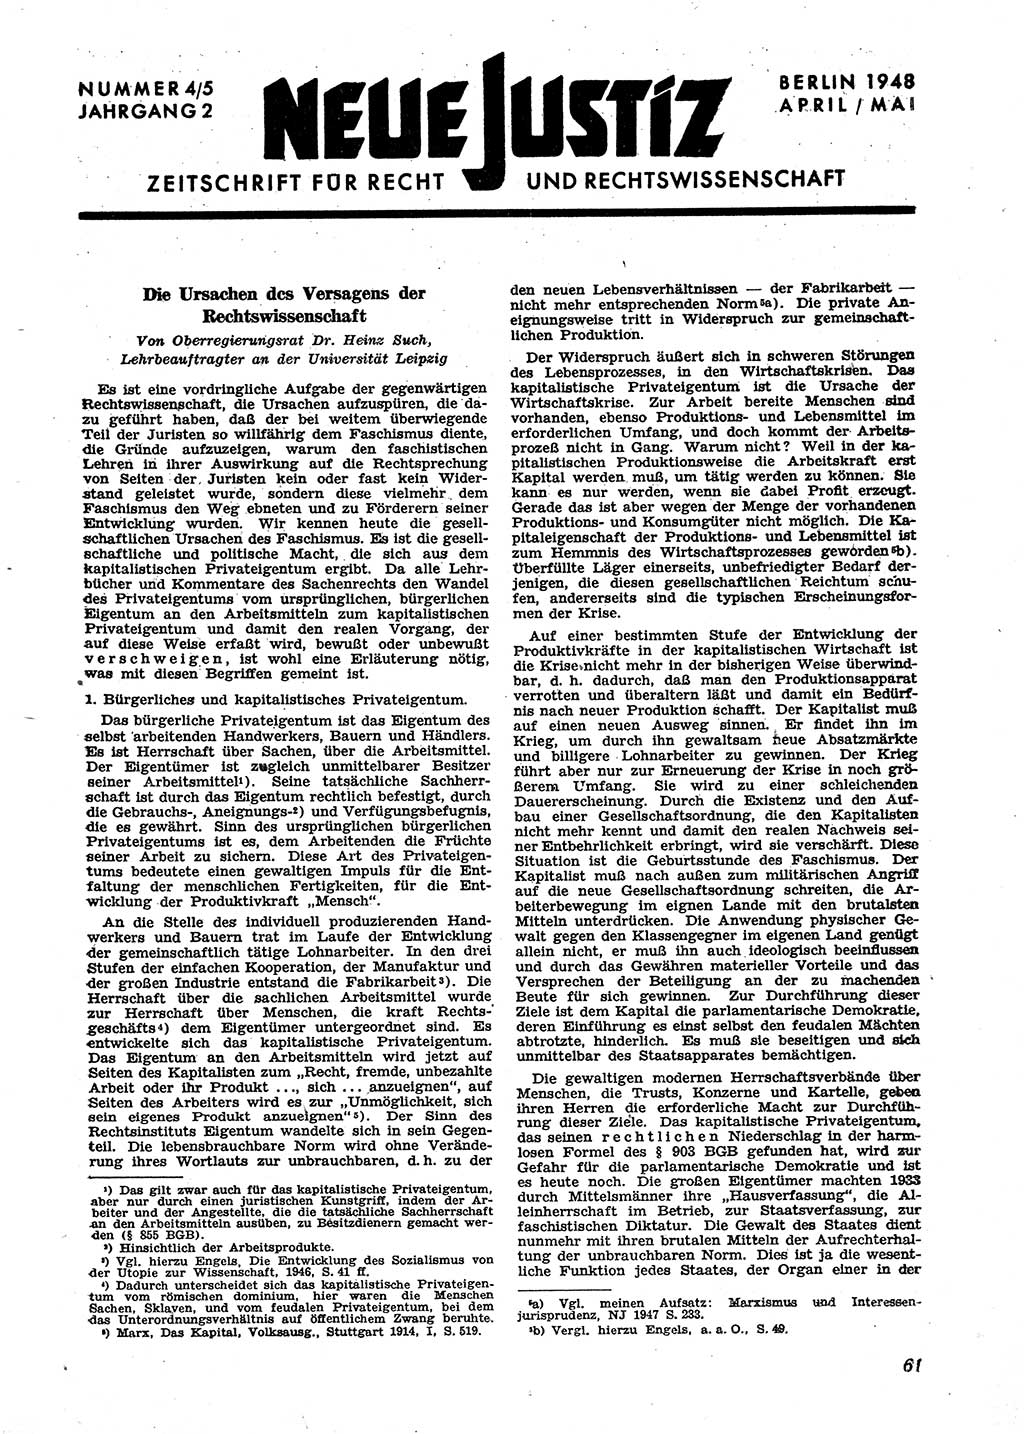 Neue Justiz (NJ), Zeitschrift für Recht und Rechtswissenschaft [Sowjetische Besatzungszone (SBZ) Deutschland], 2. Jahrgang 1948, Seite 61 (NJ SBZ Dtl. 1948, S. 61)